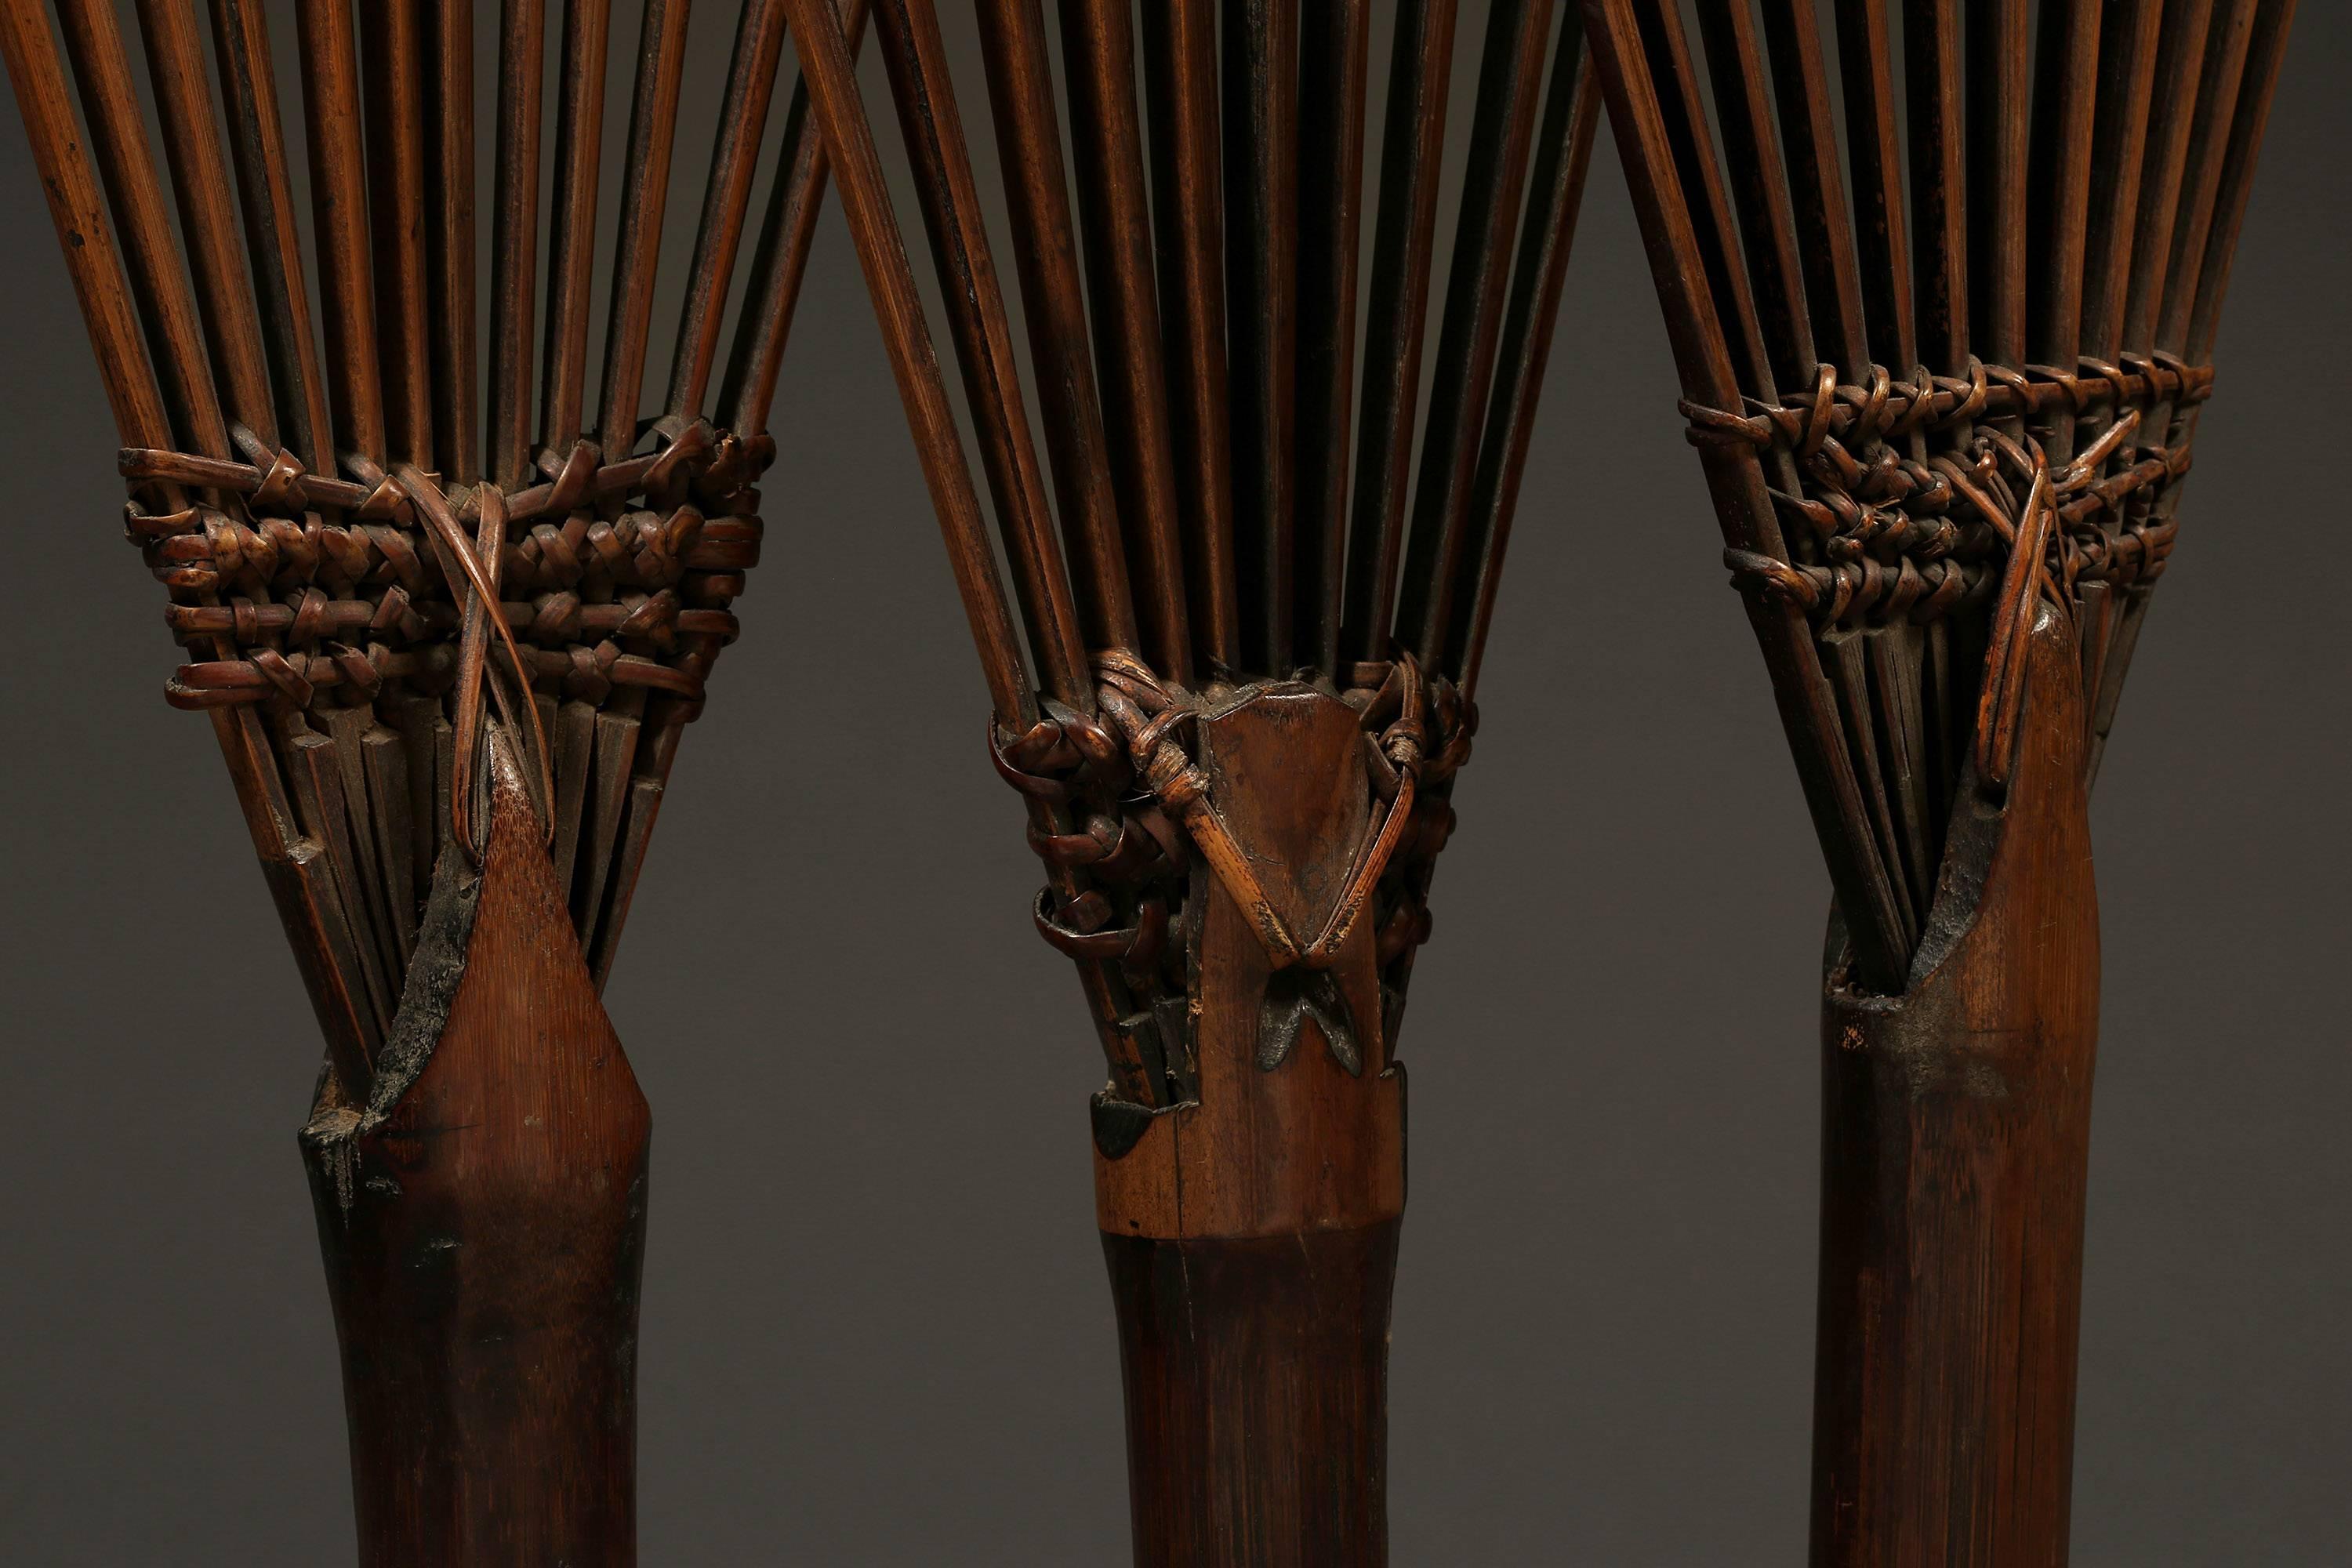 Three-grain threshing tools
Arunachal Pradesh, NE India
circa 1920
Bamboo handle with split bamboo tines.